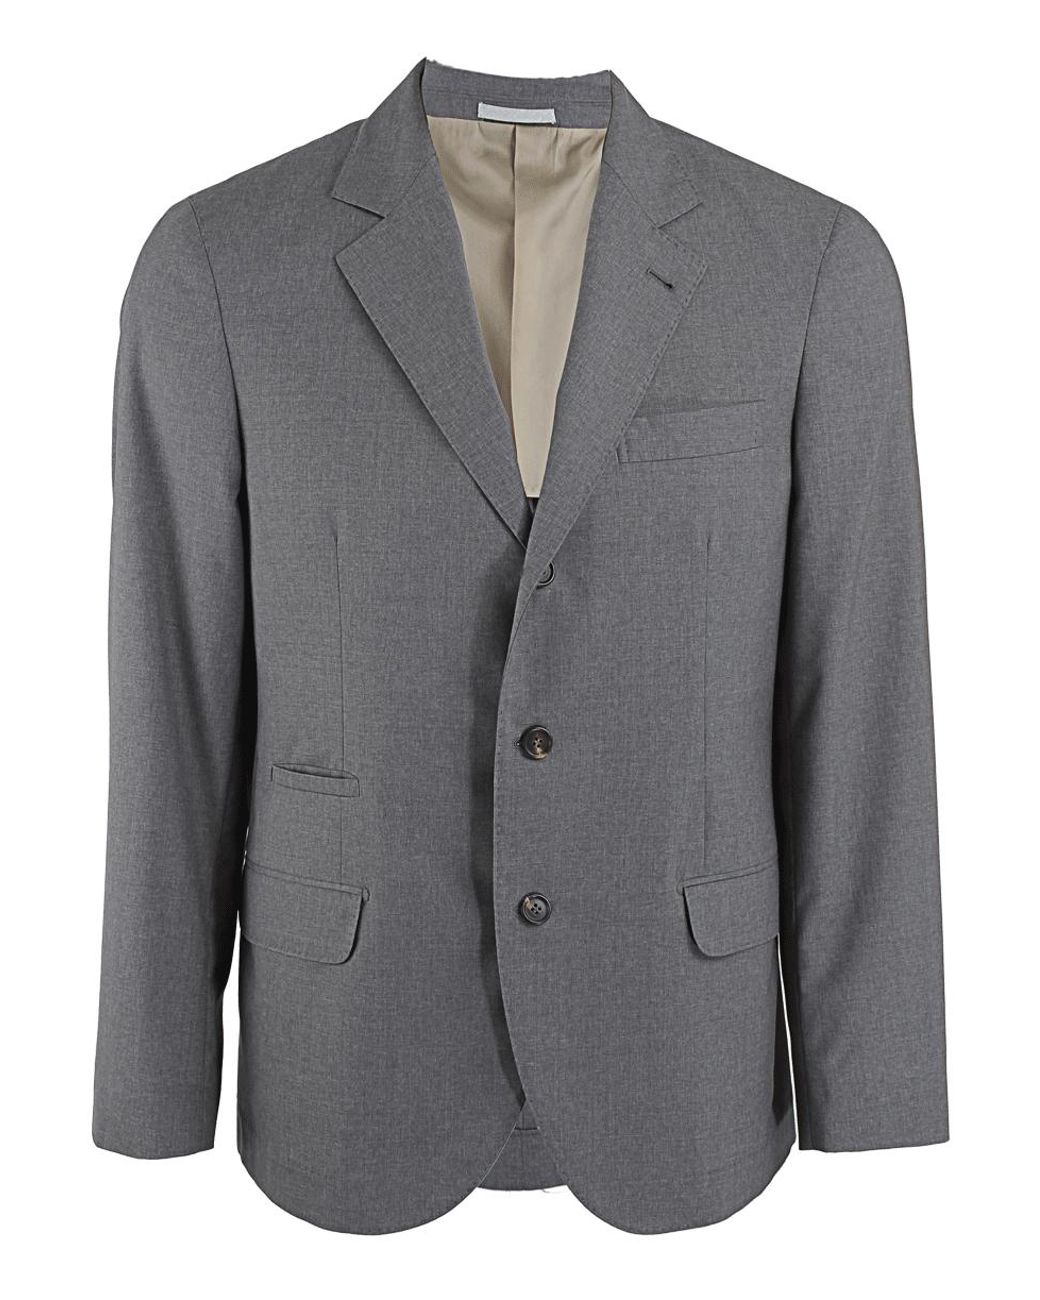 Brunello Cucinelli Wool Travel Blazer in Grey (Gray) for Men - Lyst